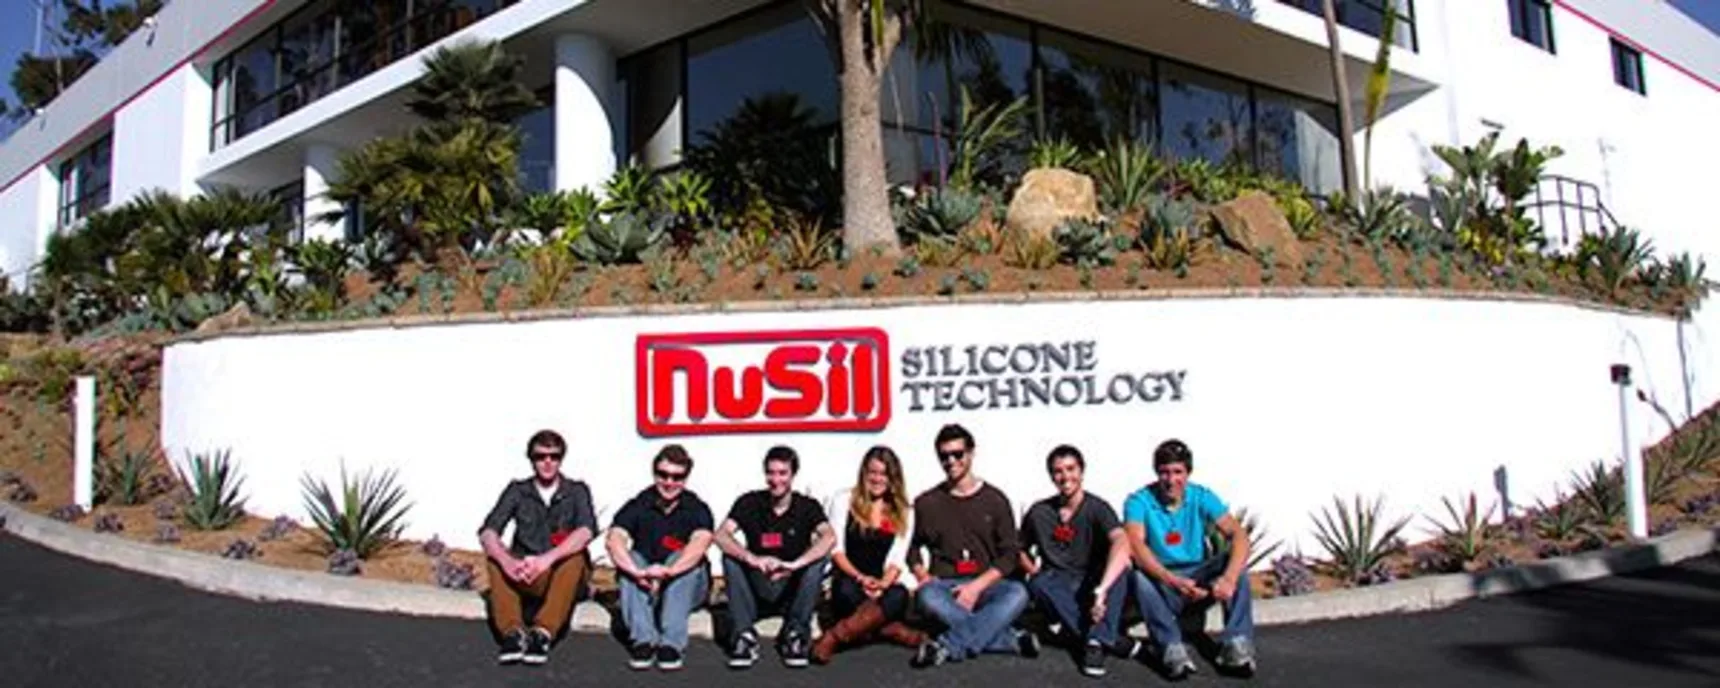 NuSil Technology banner